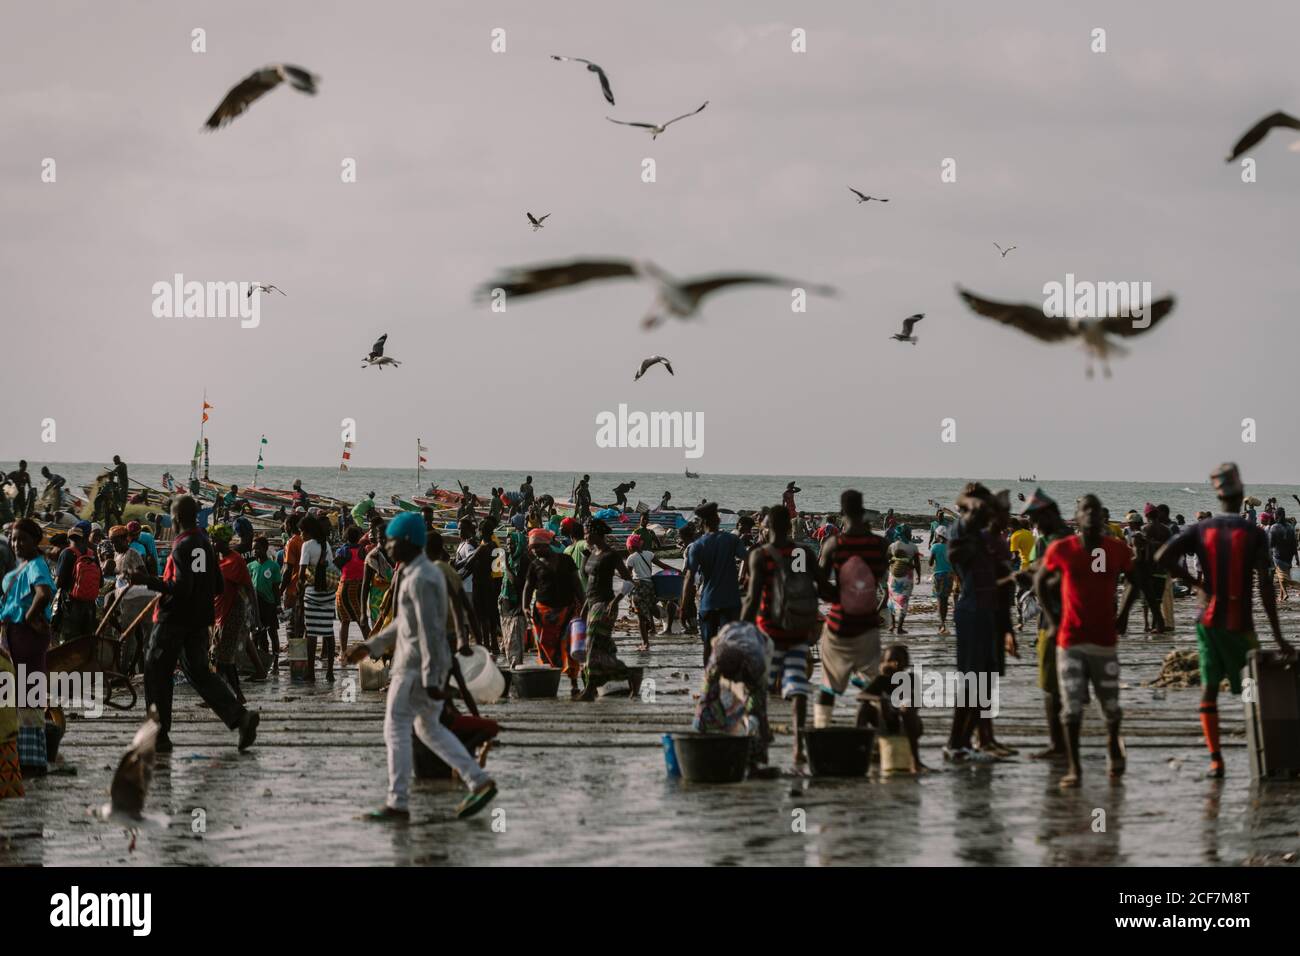 Gambia, Afrika - 3. August 2019: Überfüllter Strand der Atlantikküste während der geschäftigen Saison der Produktion und Meeresfrüchte Verkauf Stockfoto